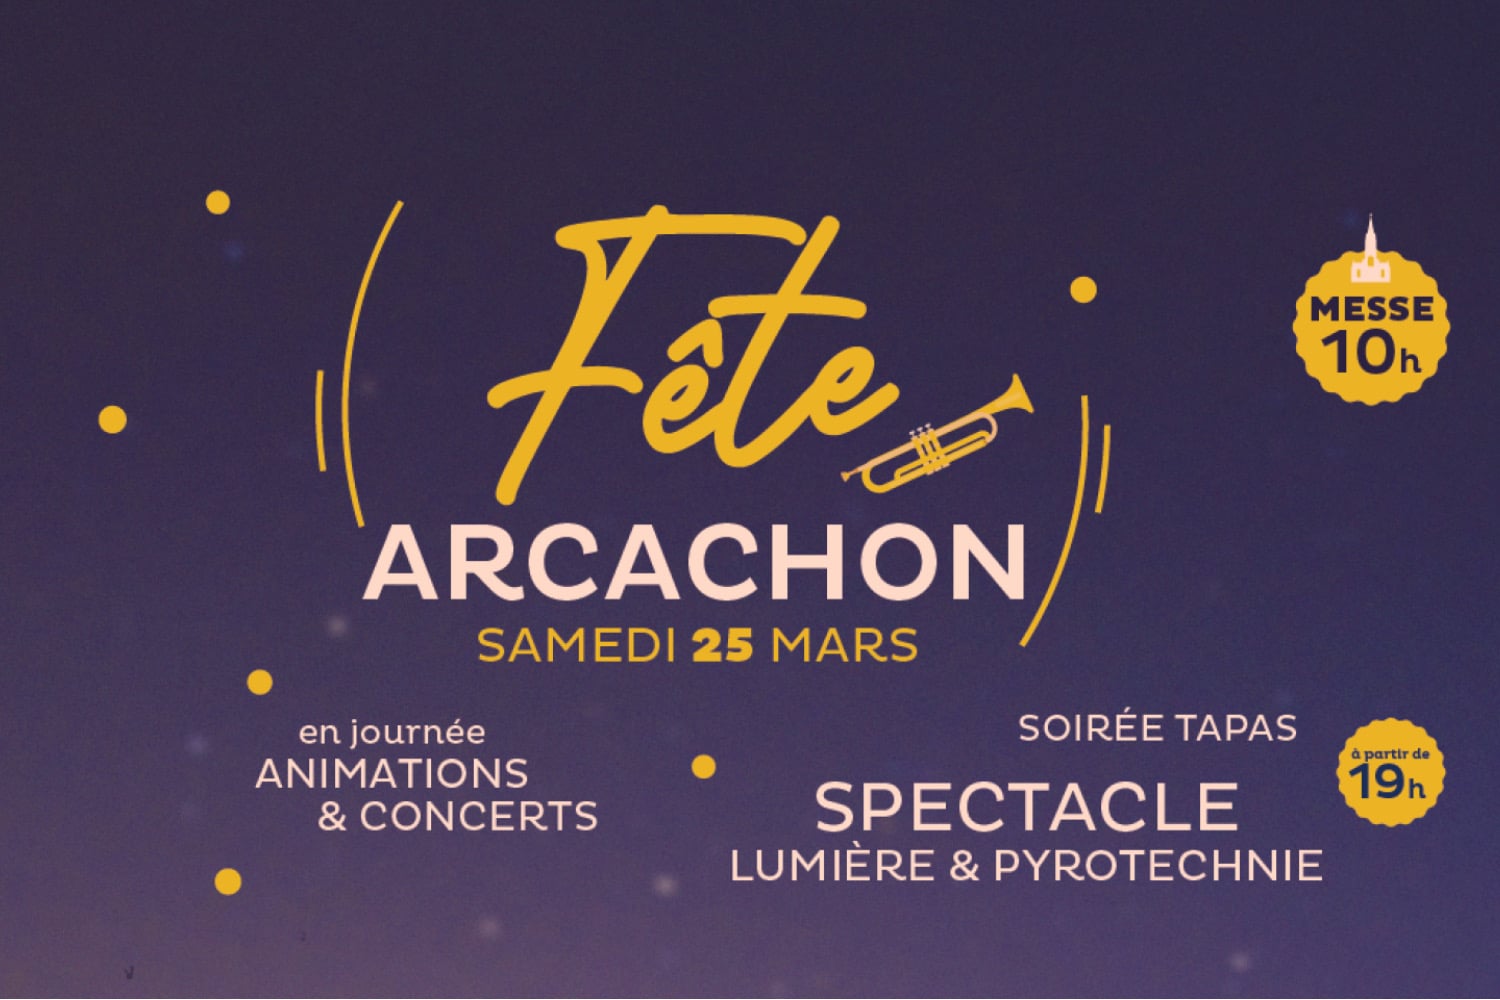 Le 25 mars est le jour de l’Annonciation et de la fête patronale de la Ville d’Arcachon.